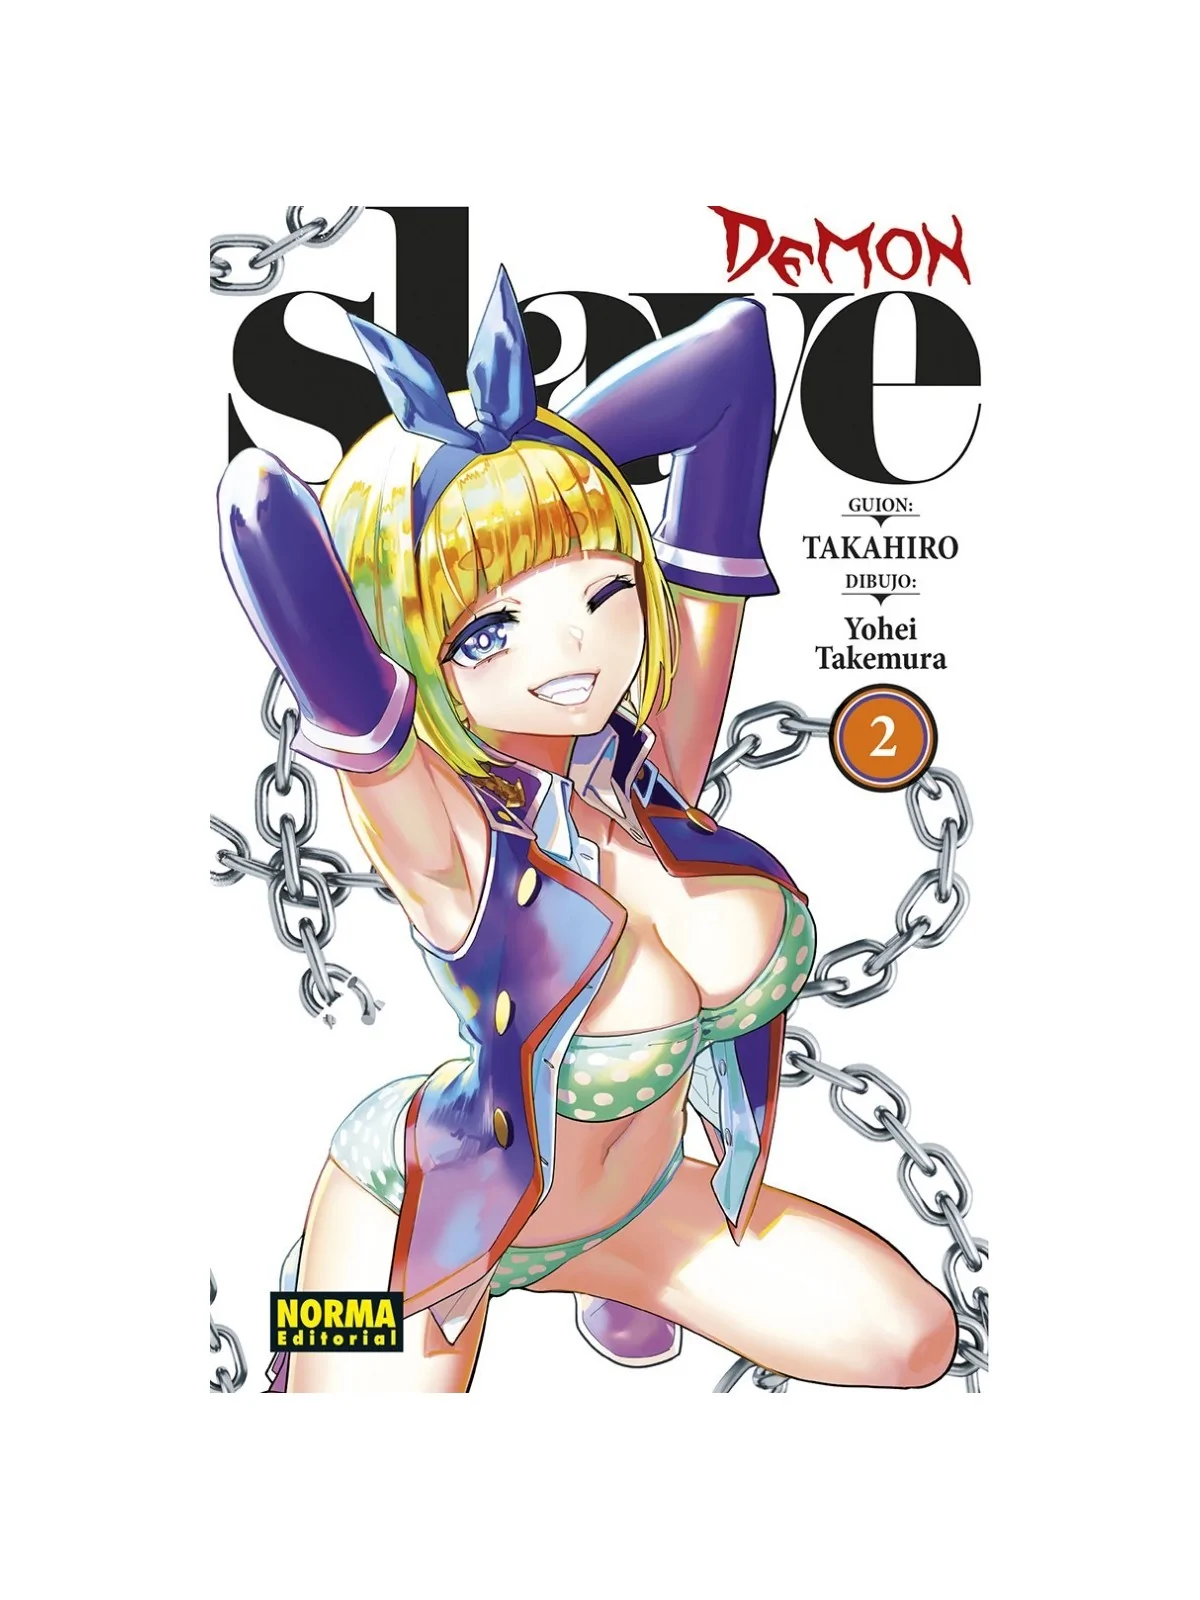 Comprar Demon Slave 02 barato al mejor precio 8,55 € de Norma Editoria